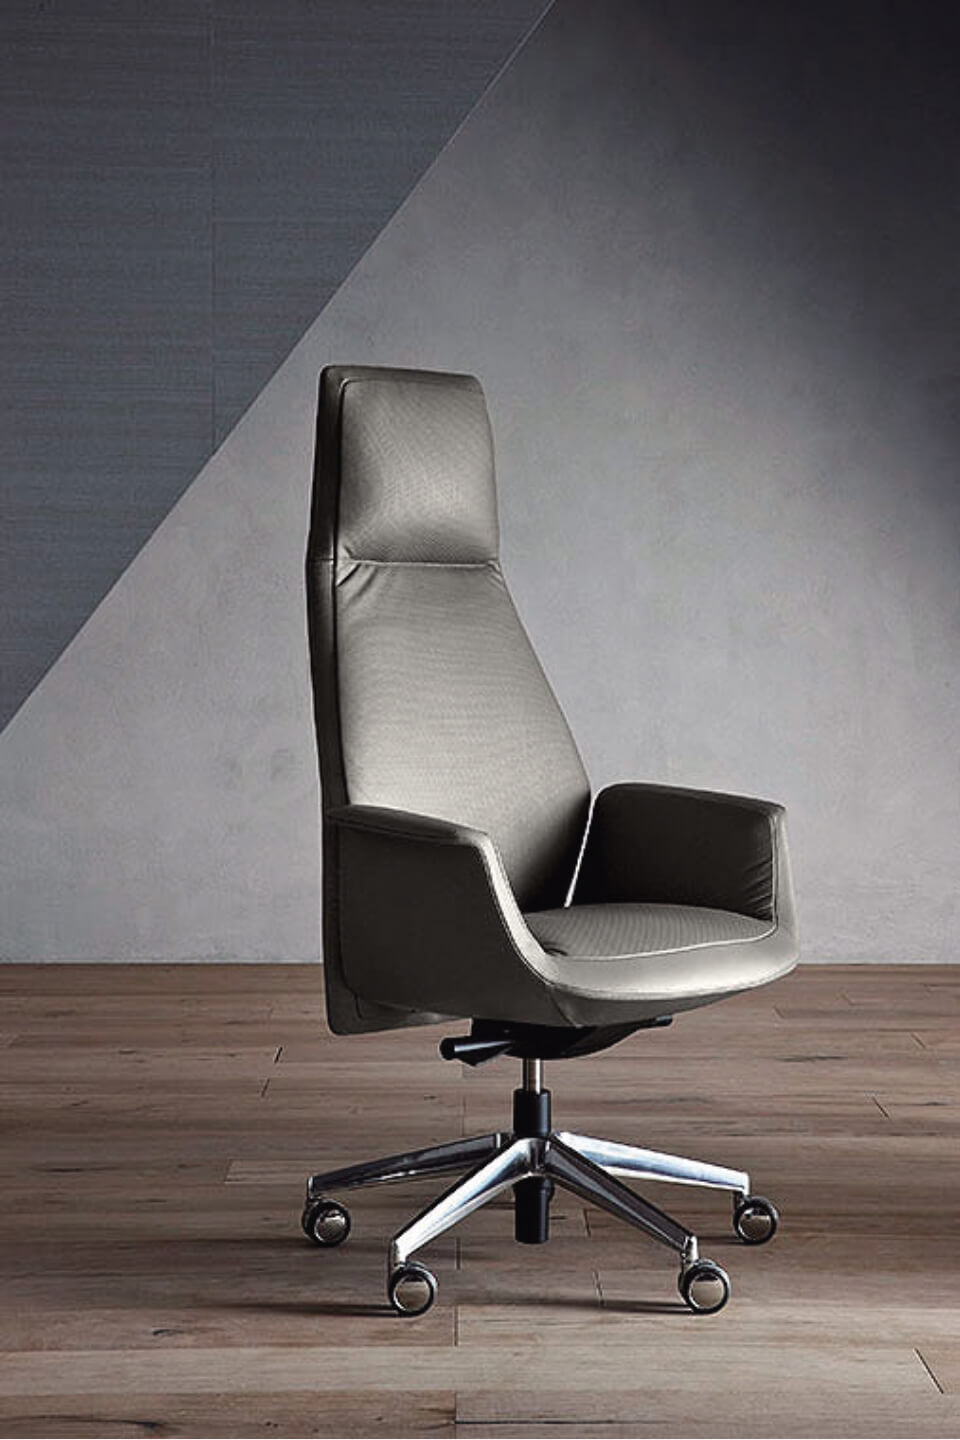 洗練されたデザインの「DownTown」は、フォルムの美しさと座り心地を追求した形状、革のシワやステッチまでこだわった存在感のある椅子。背もたれの形状などが異なる5つのサイズを展開し、使い手や設置する場所に合わせてデザインや張り地を選べる。サイズ：w690×d660×h900（sh450）㎜。価格：300,000円〜